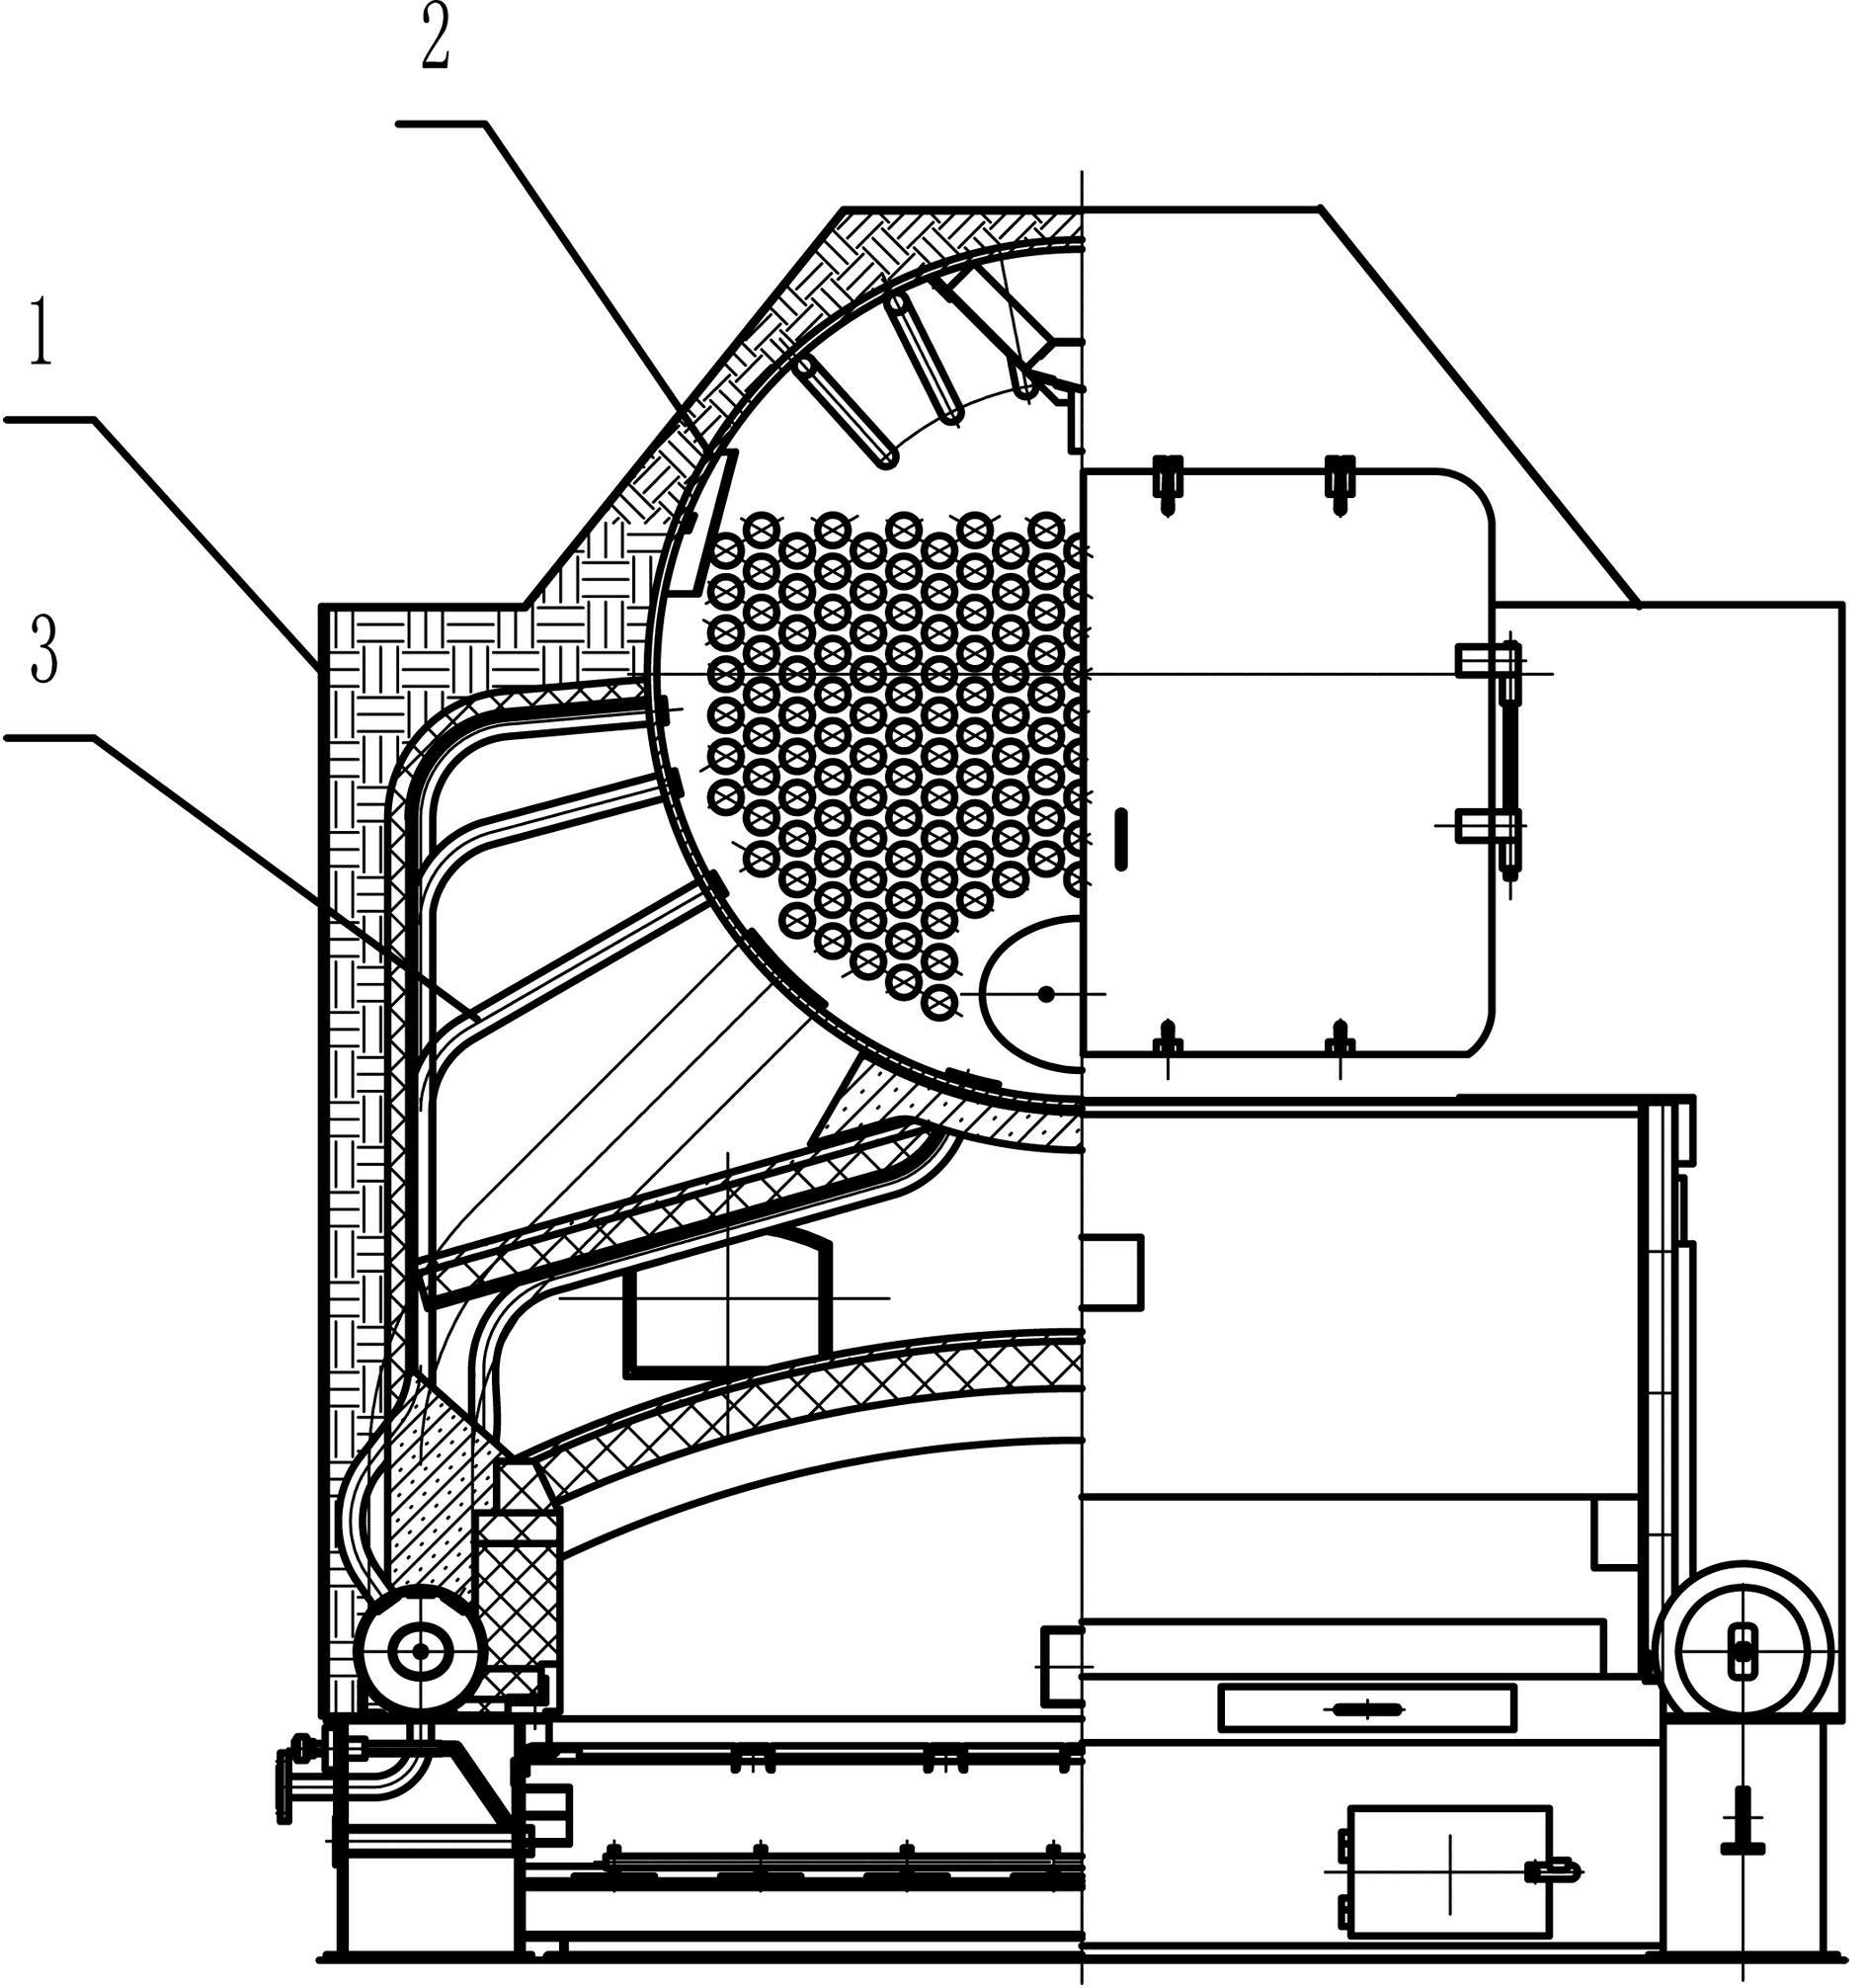 链条锅炉内部结构图解图片